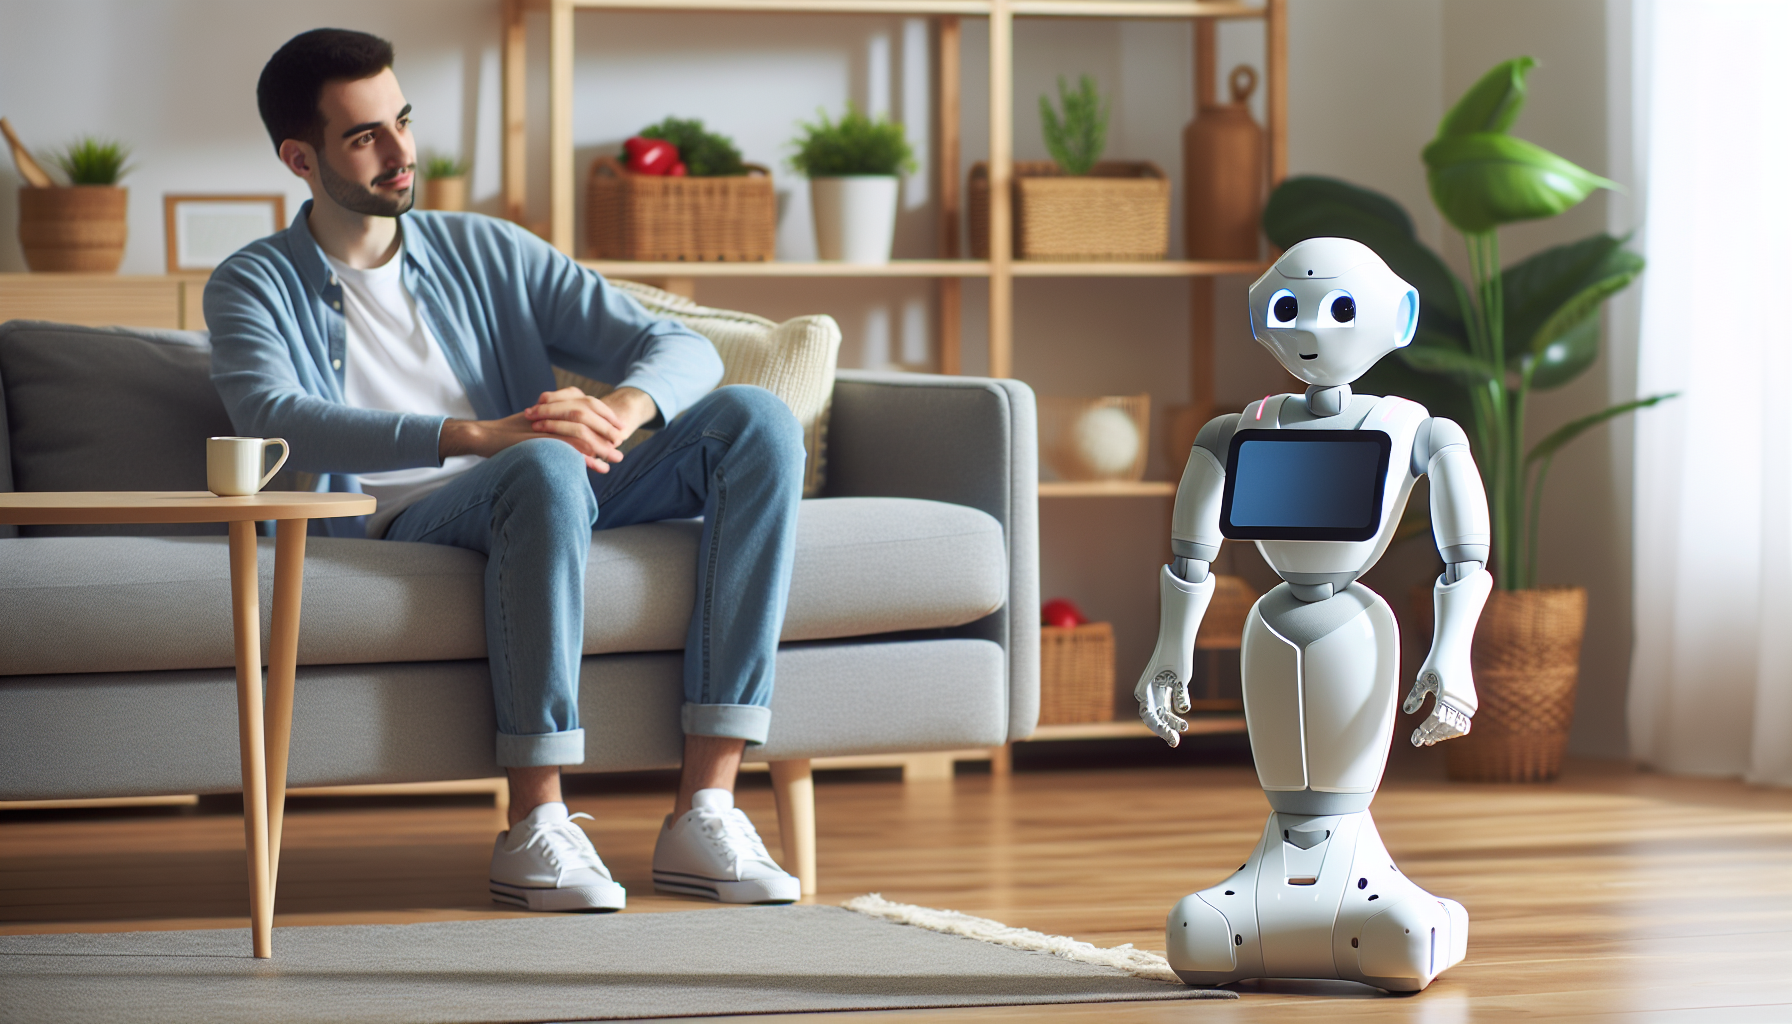 cari tahu segala sesuatu tentang lada, robot sosial softbank - fitur-fiturnya, kegunaannya dan dampaknya terhadap masyarakat.